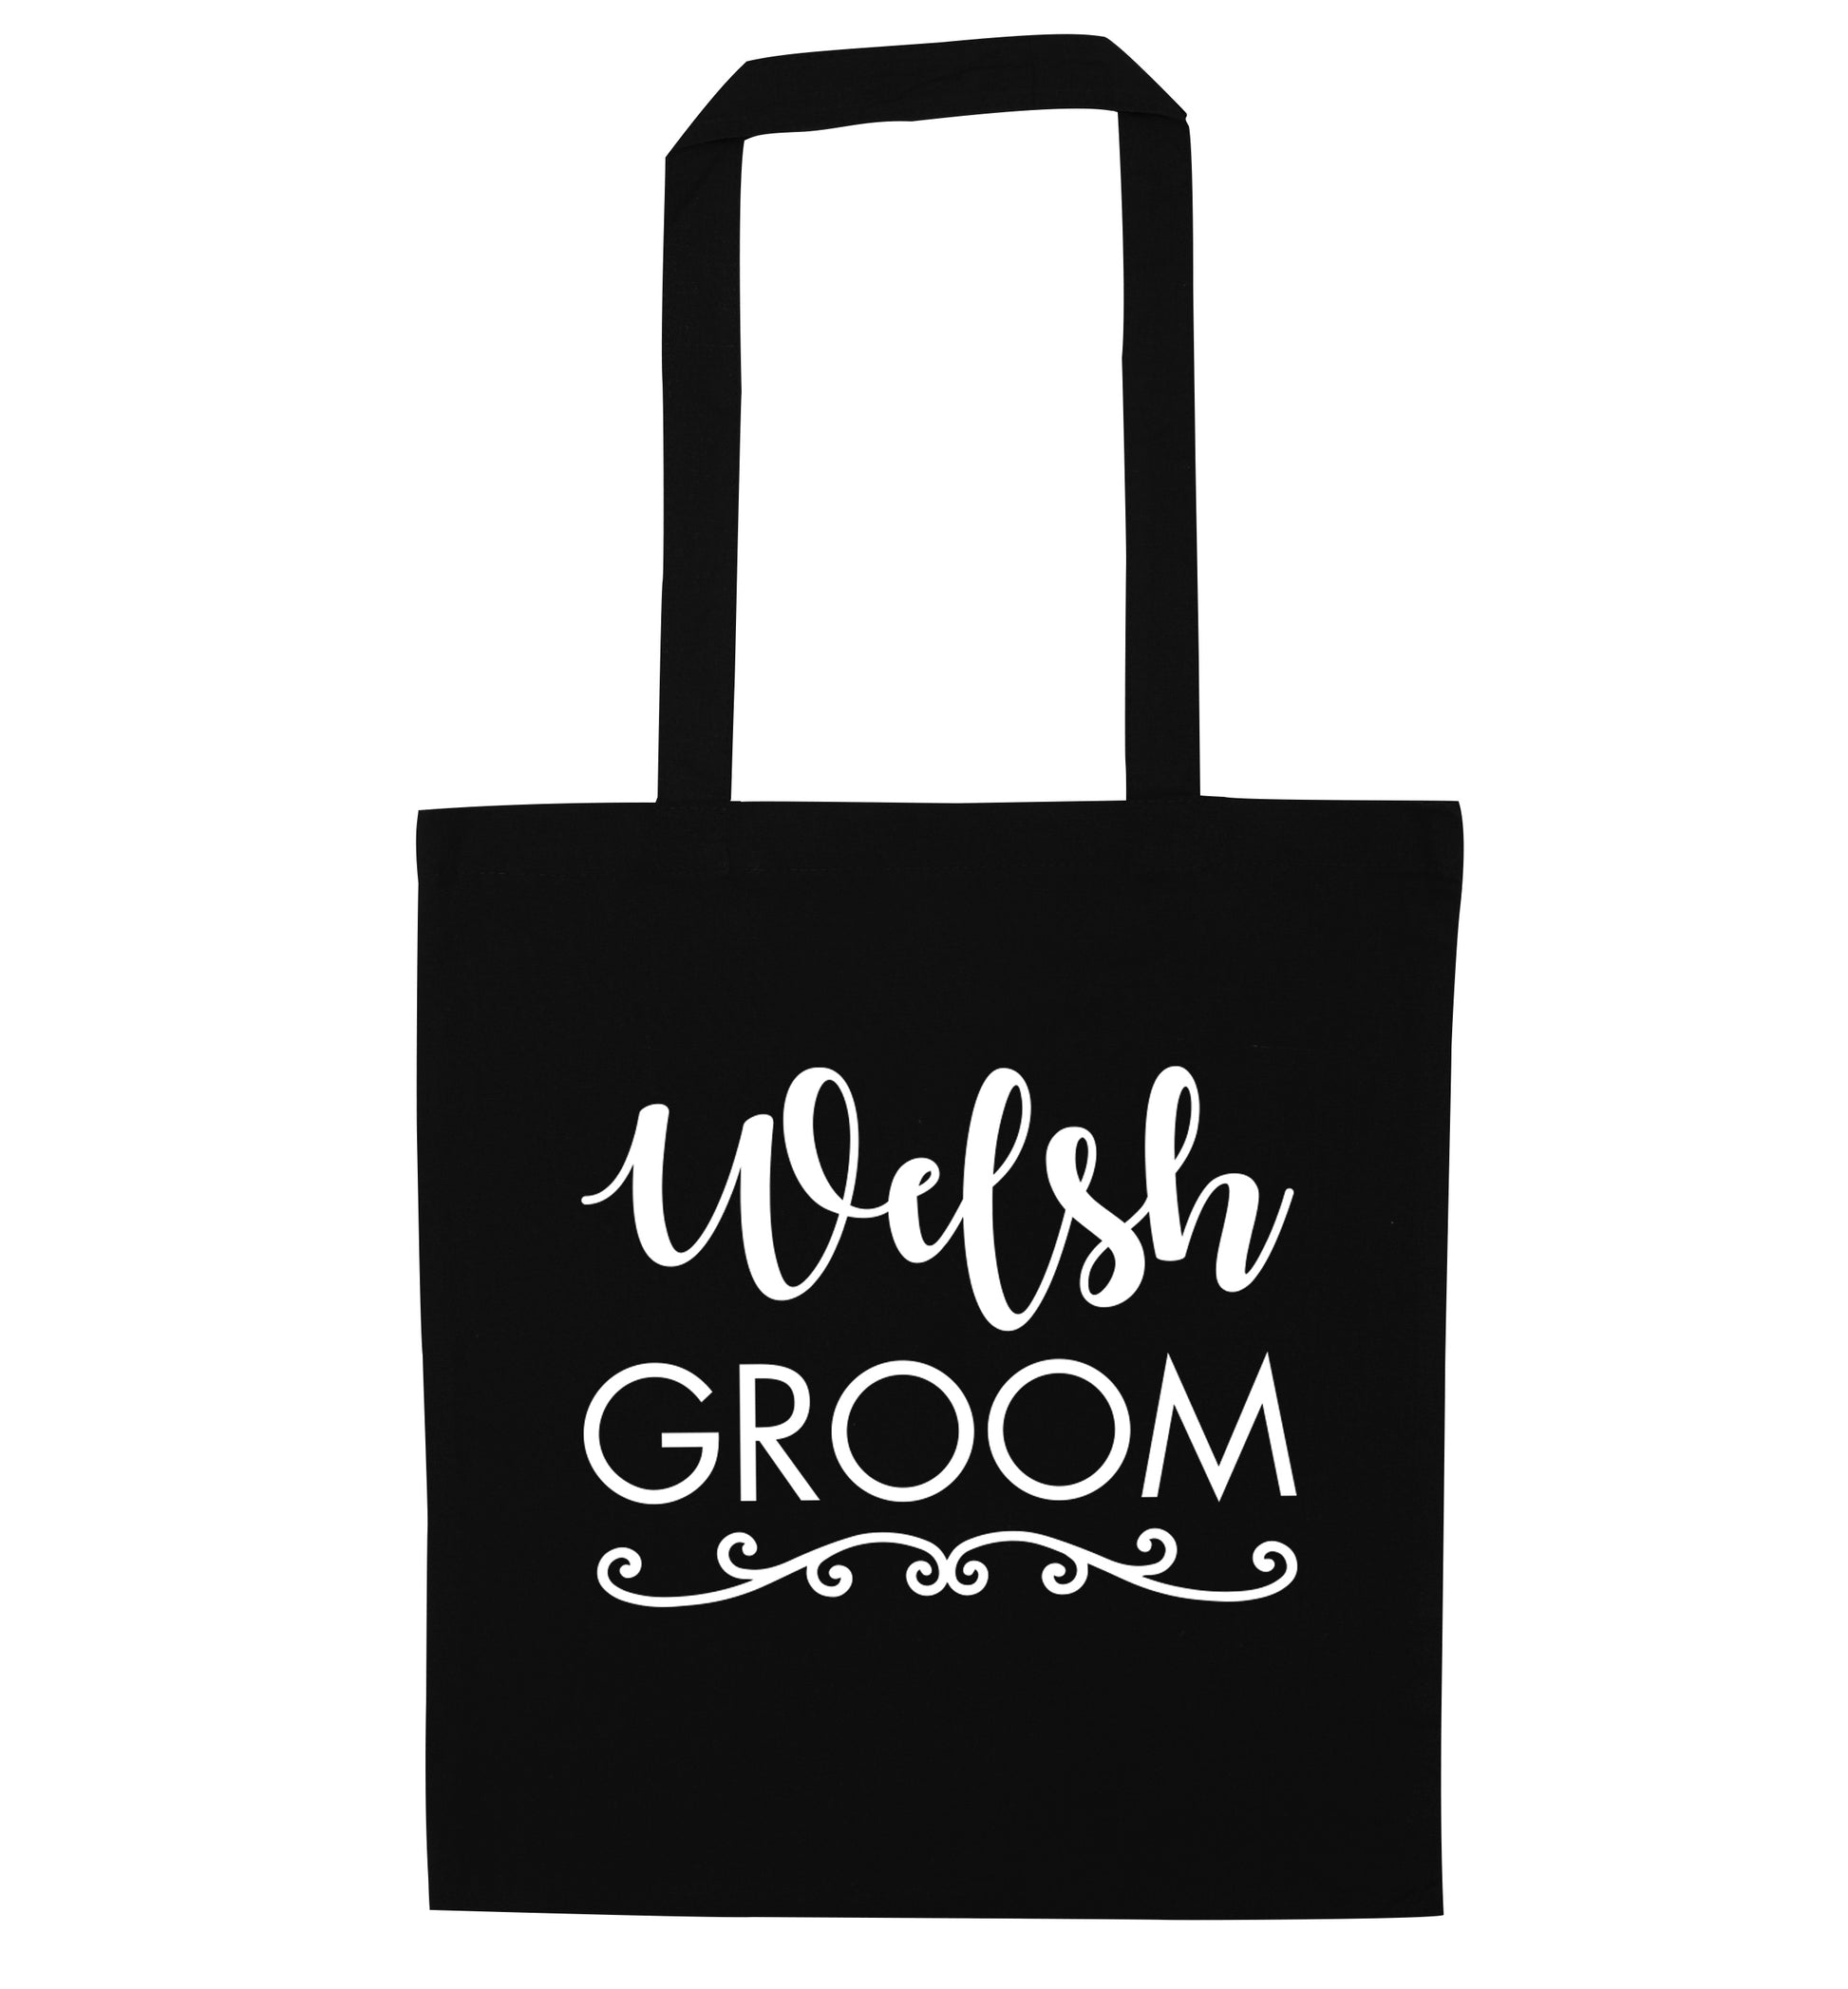 Welsh groom black tote bag